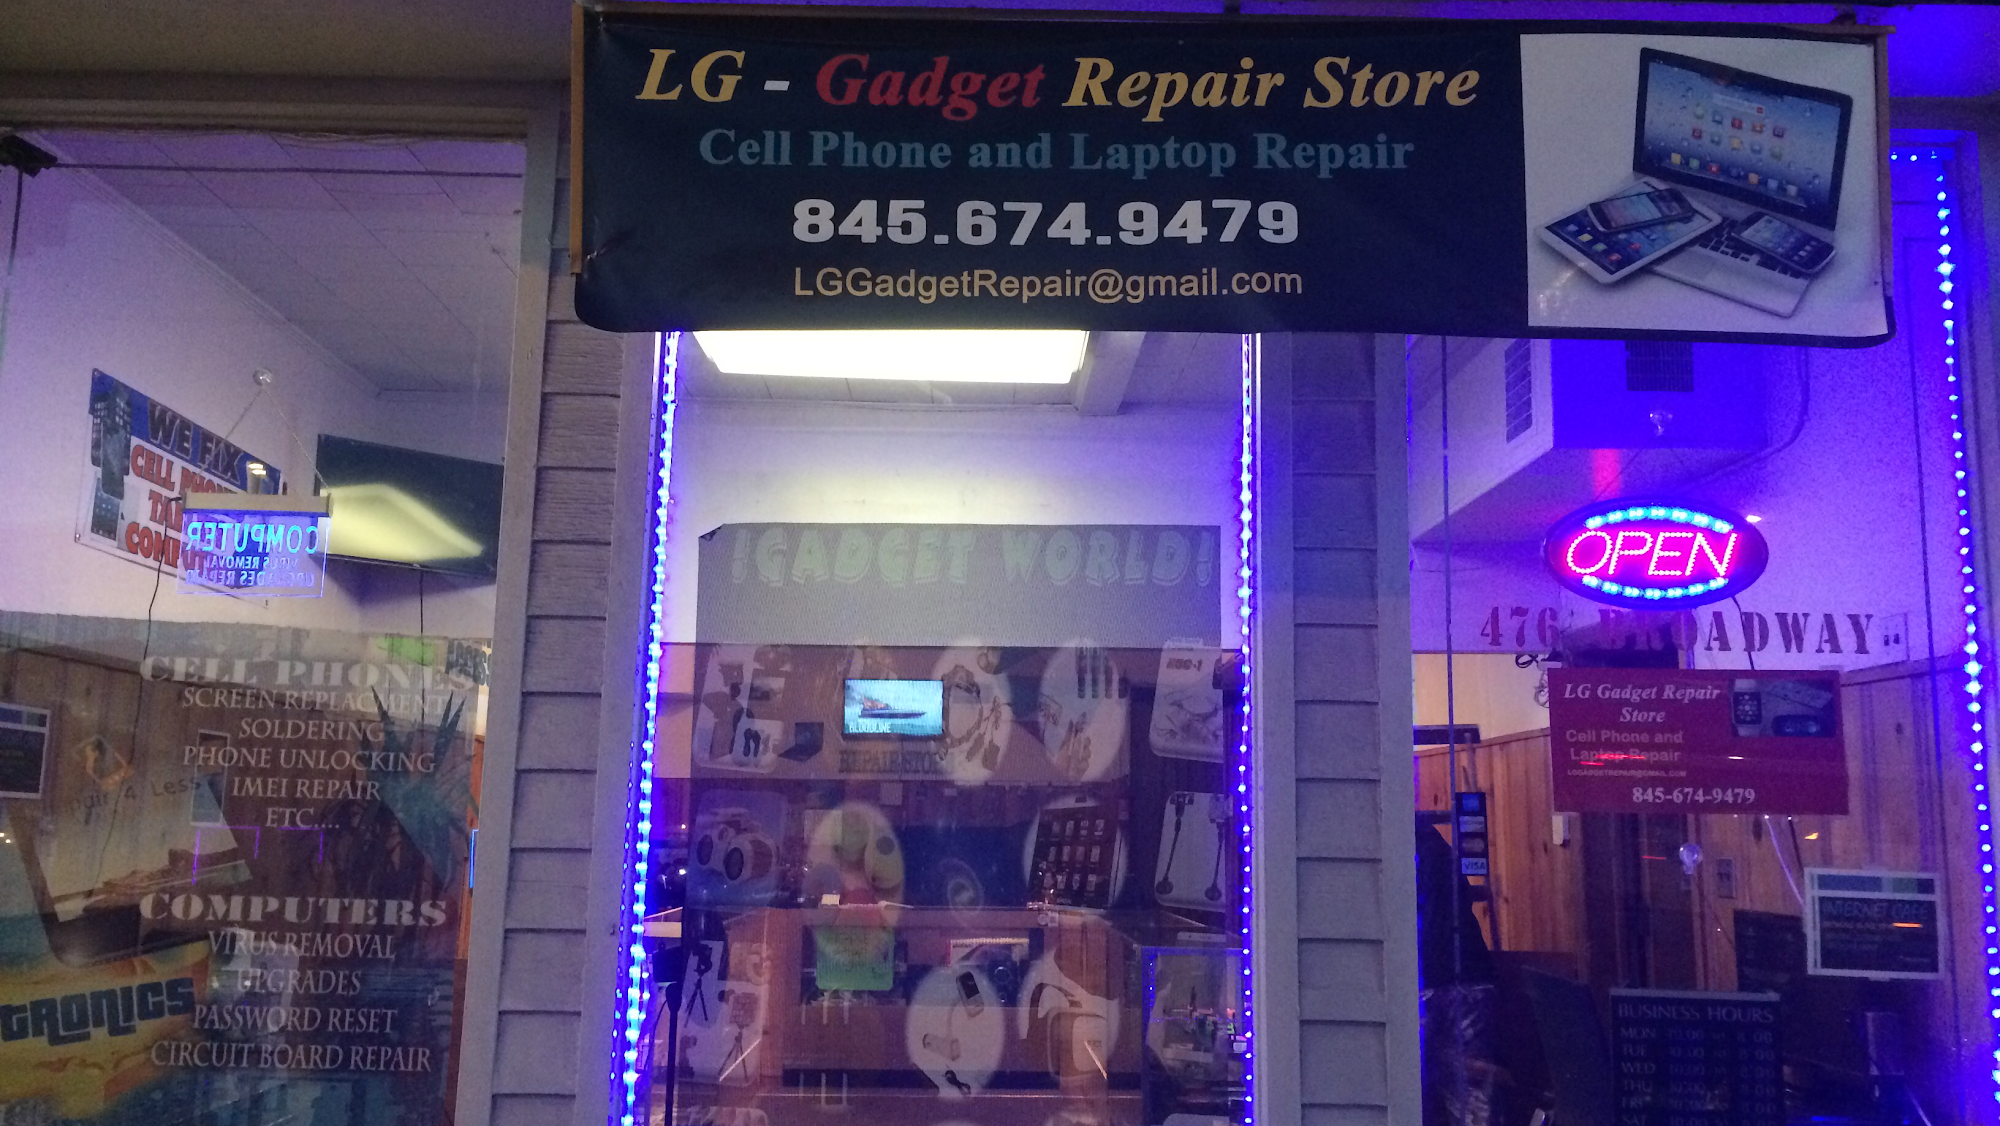 L&R Gadget Repair Store